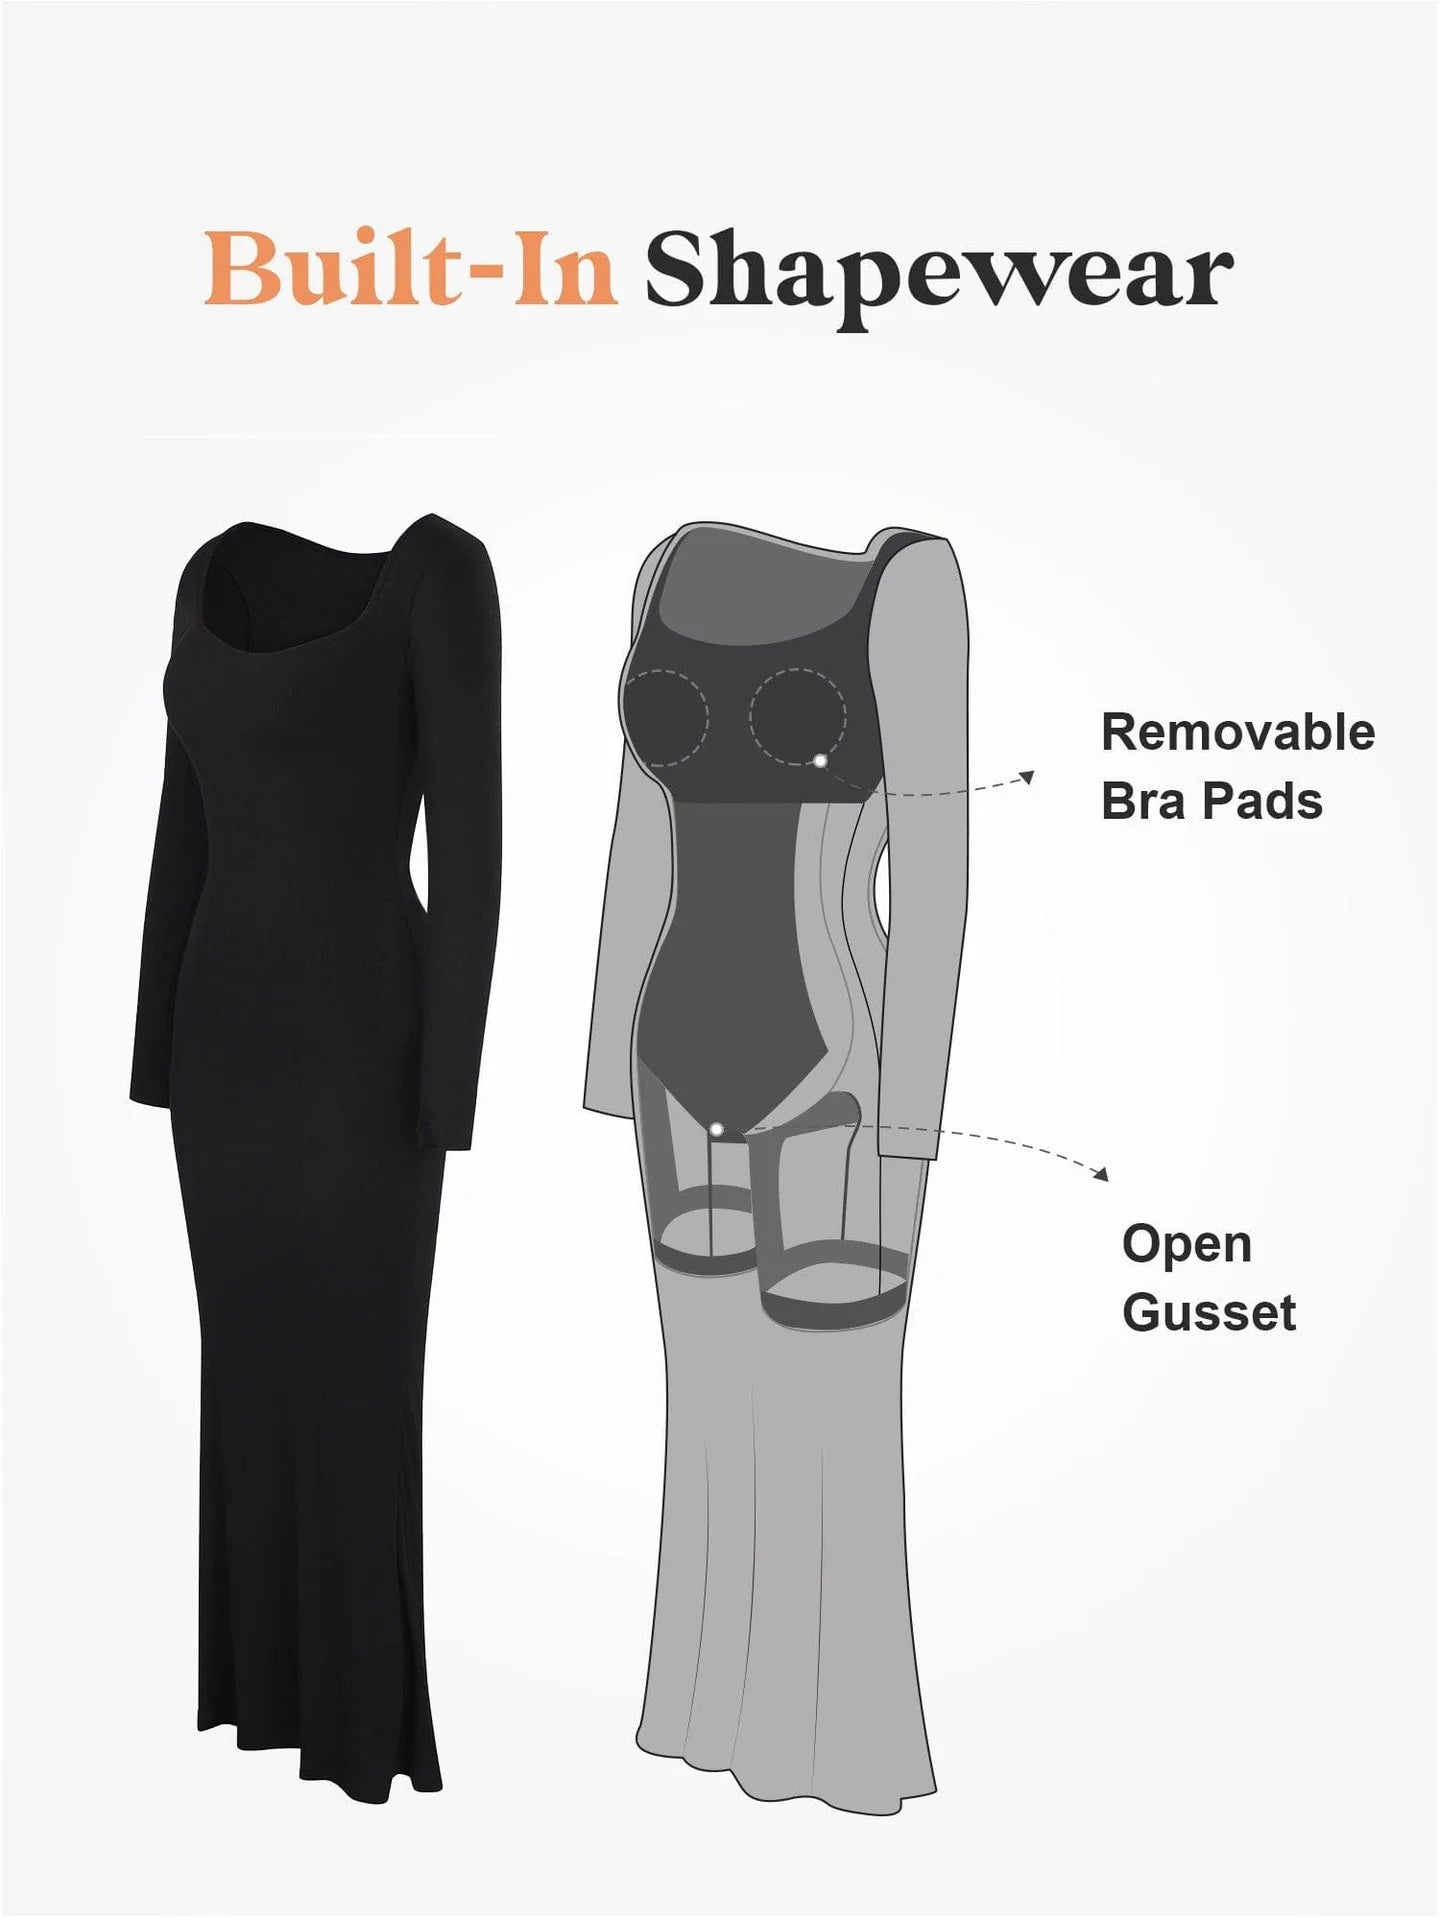 Built-in Shapewear Dress